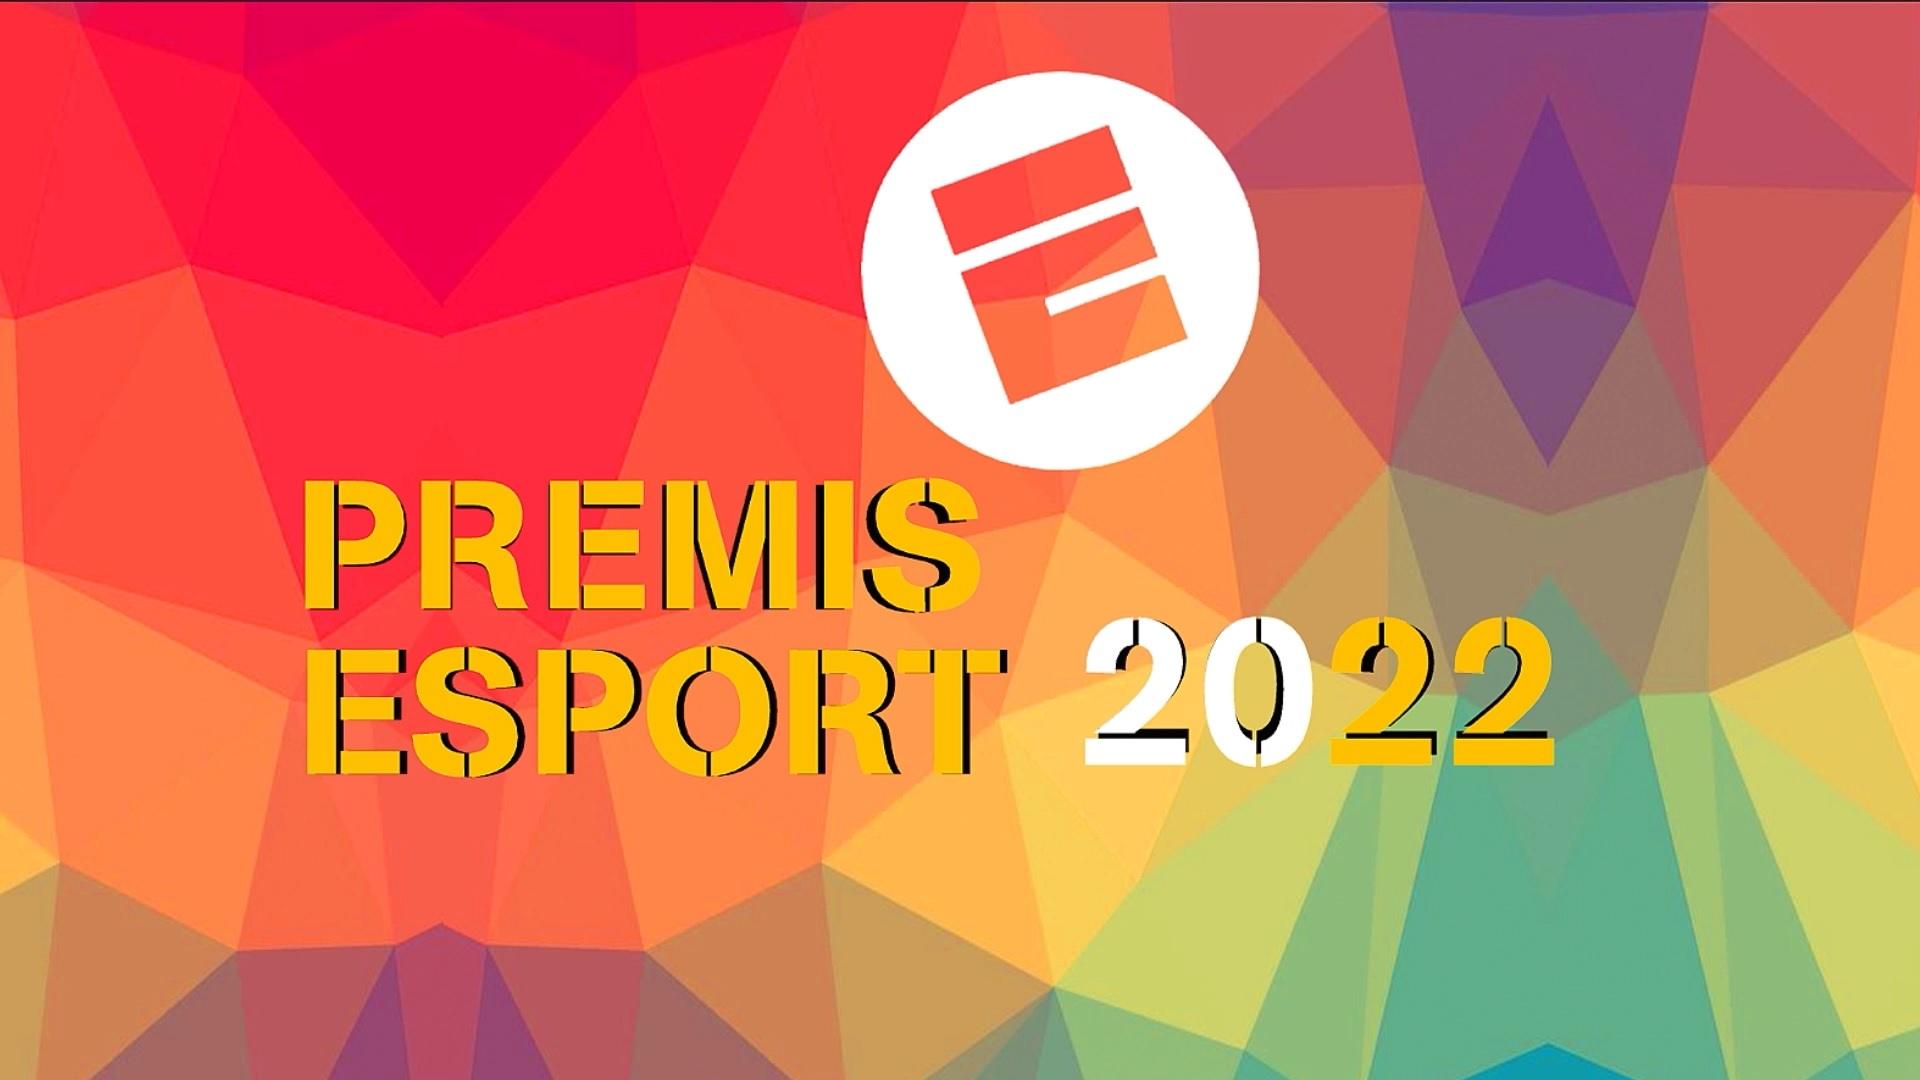 Premis Esport 2022